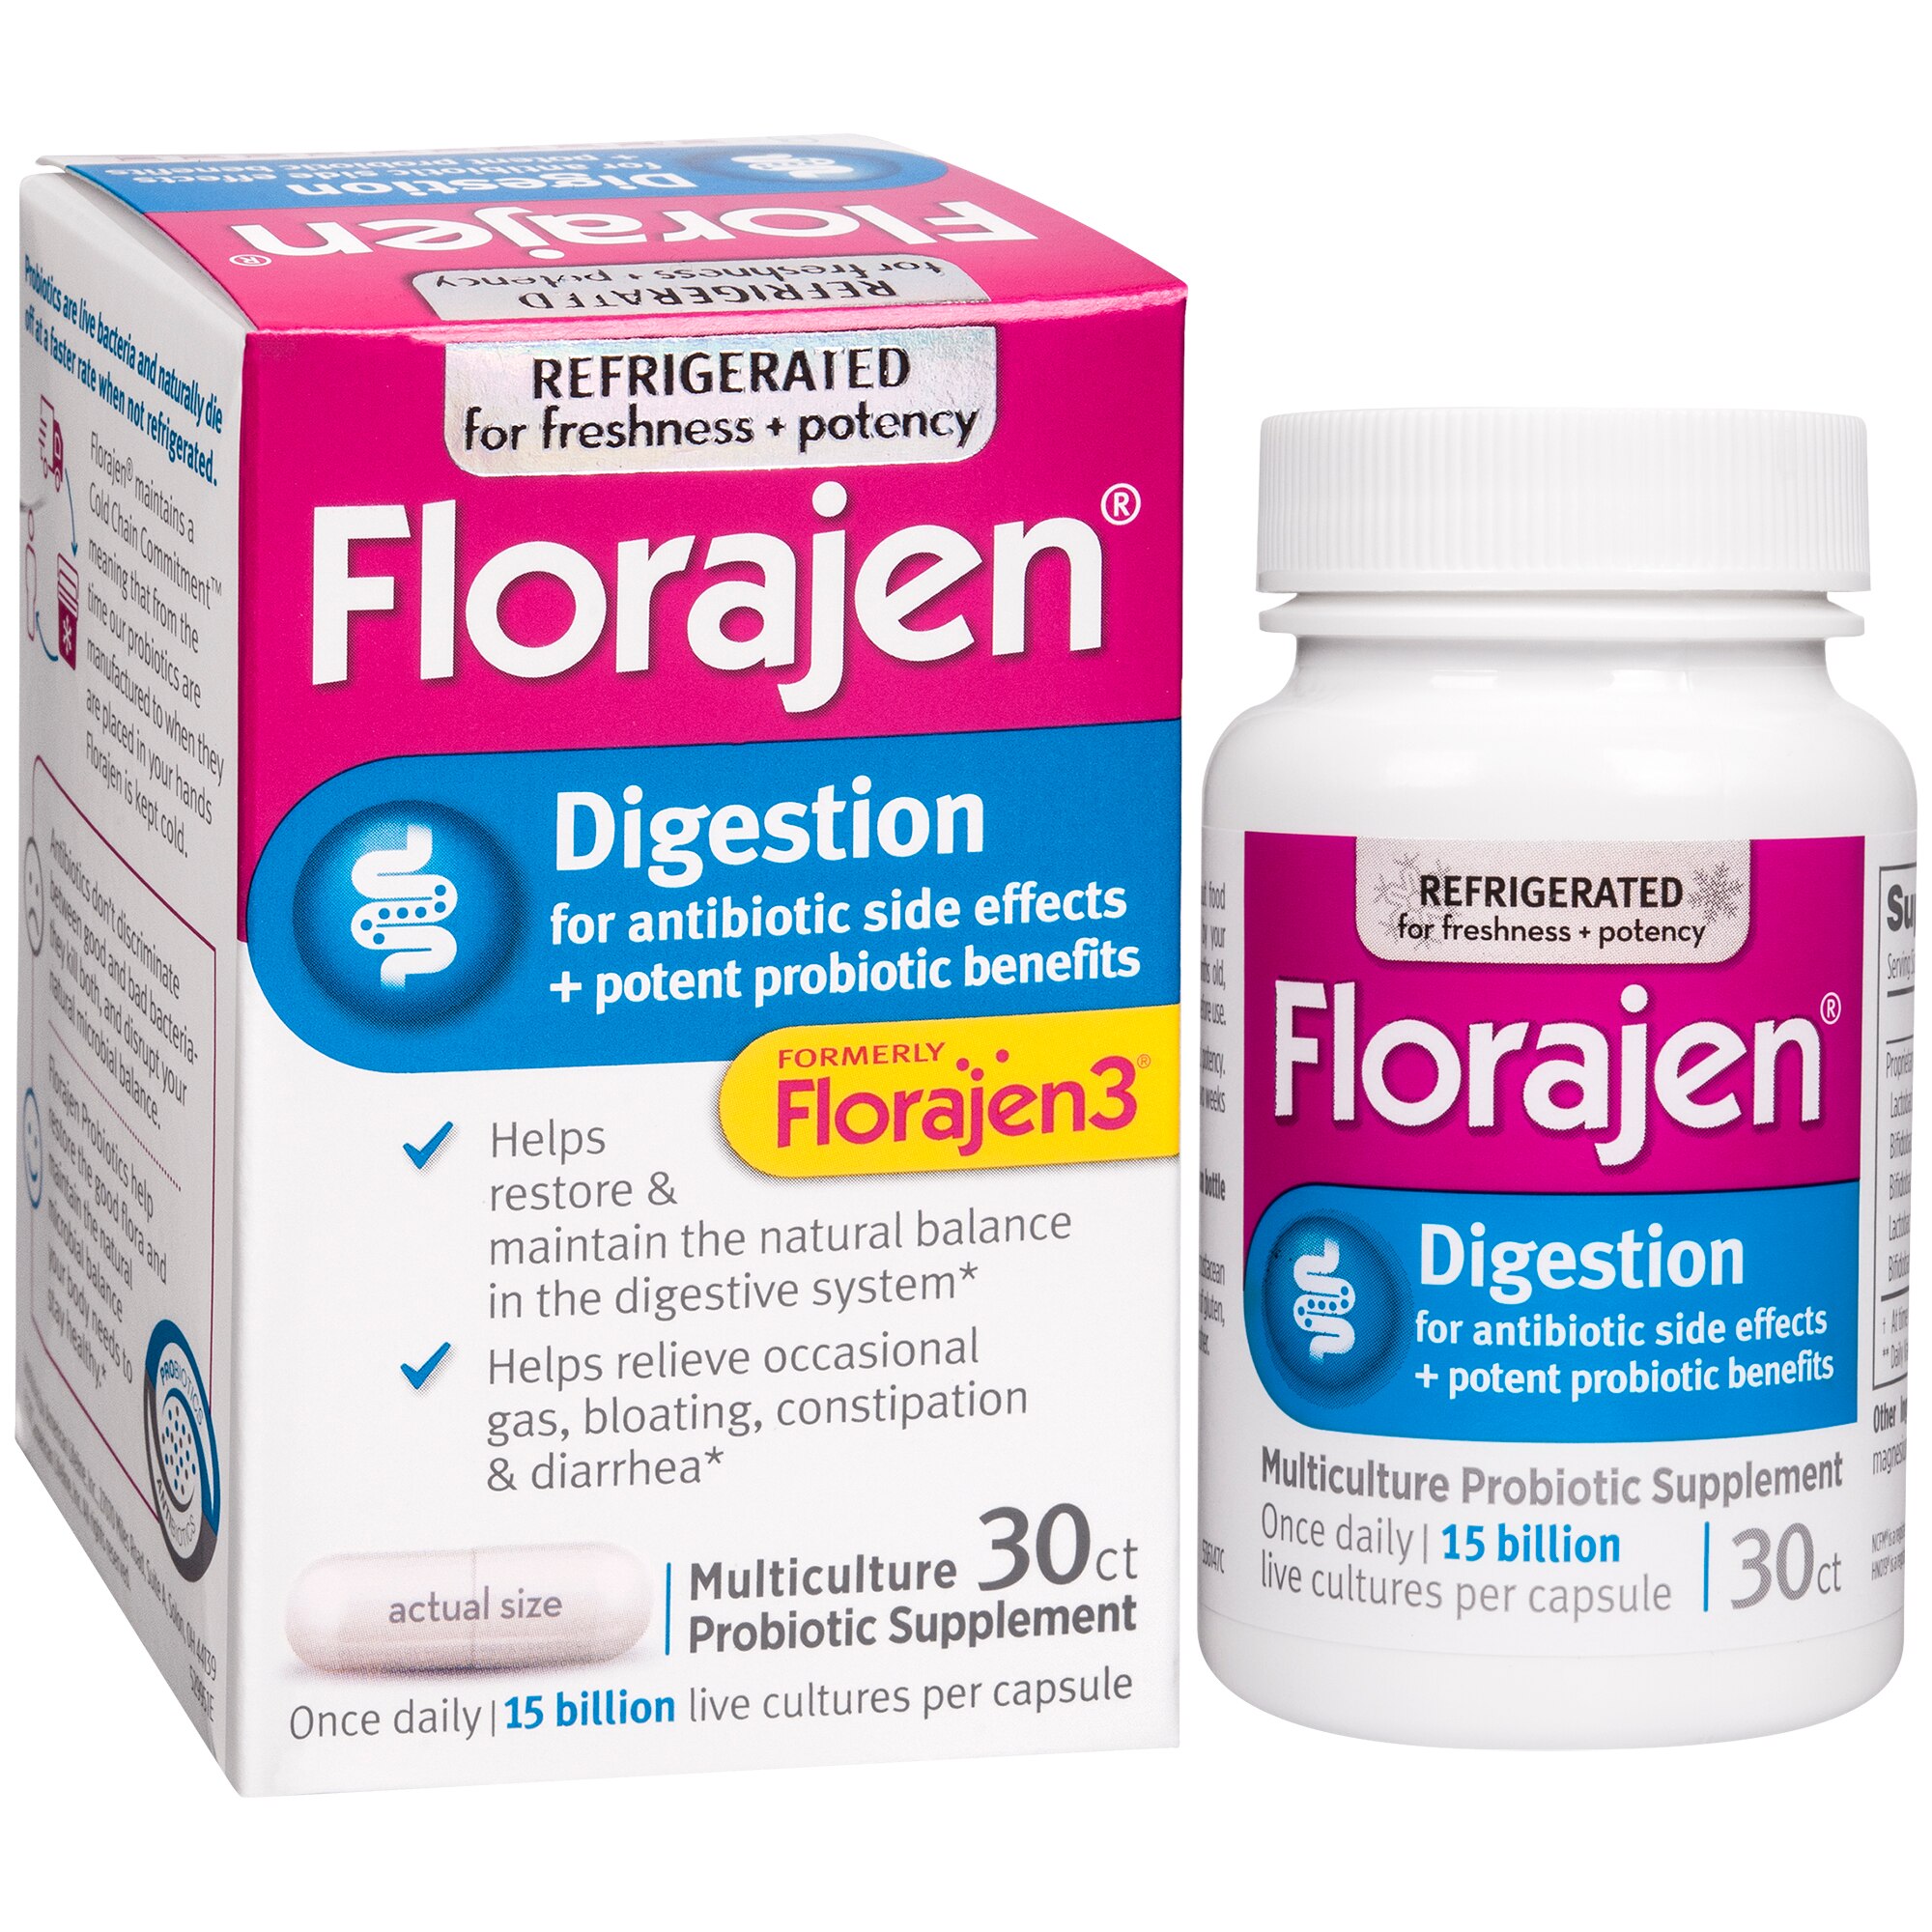 SAVE $3.00 FLORAJEN on ONE (1) FLORAJEN Probiotic